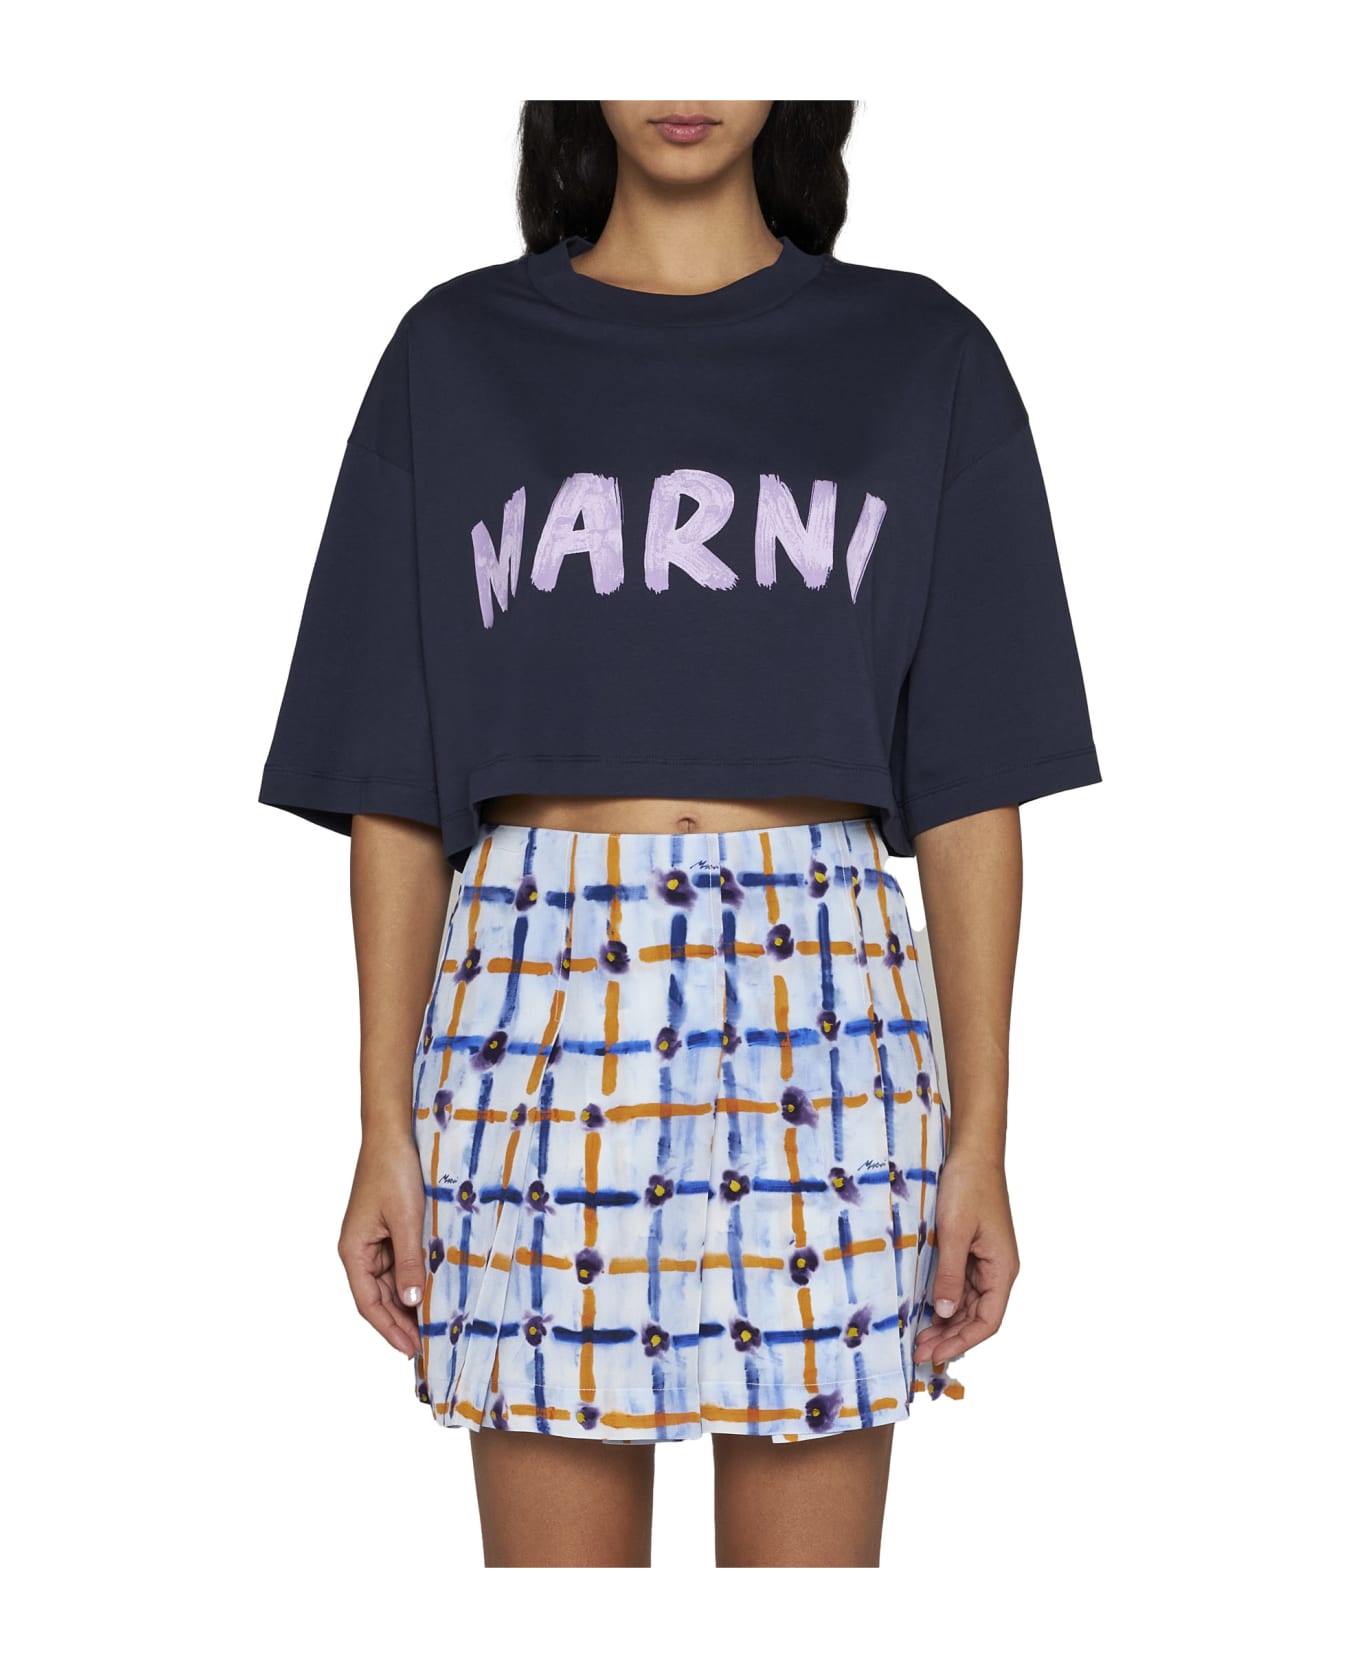 Marni T-Shirt - Blublack